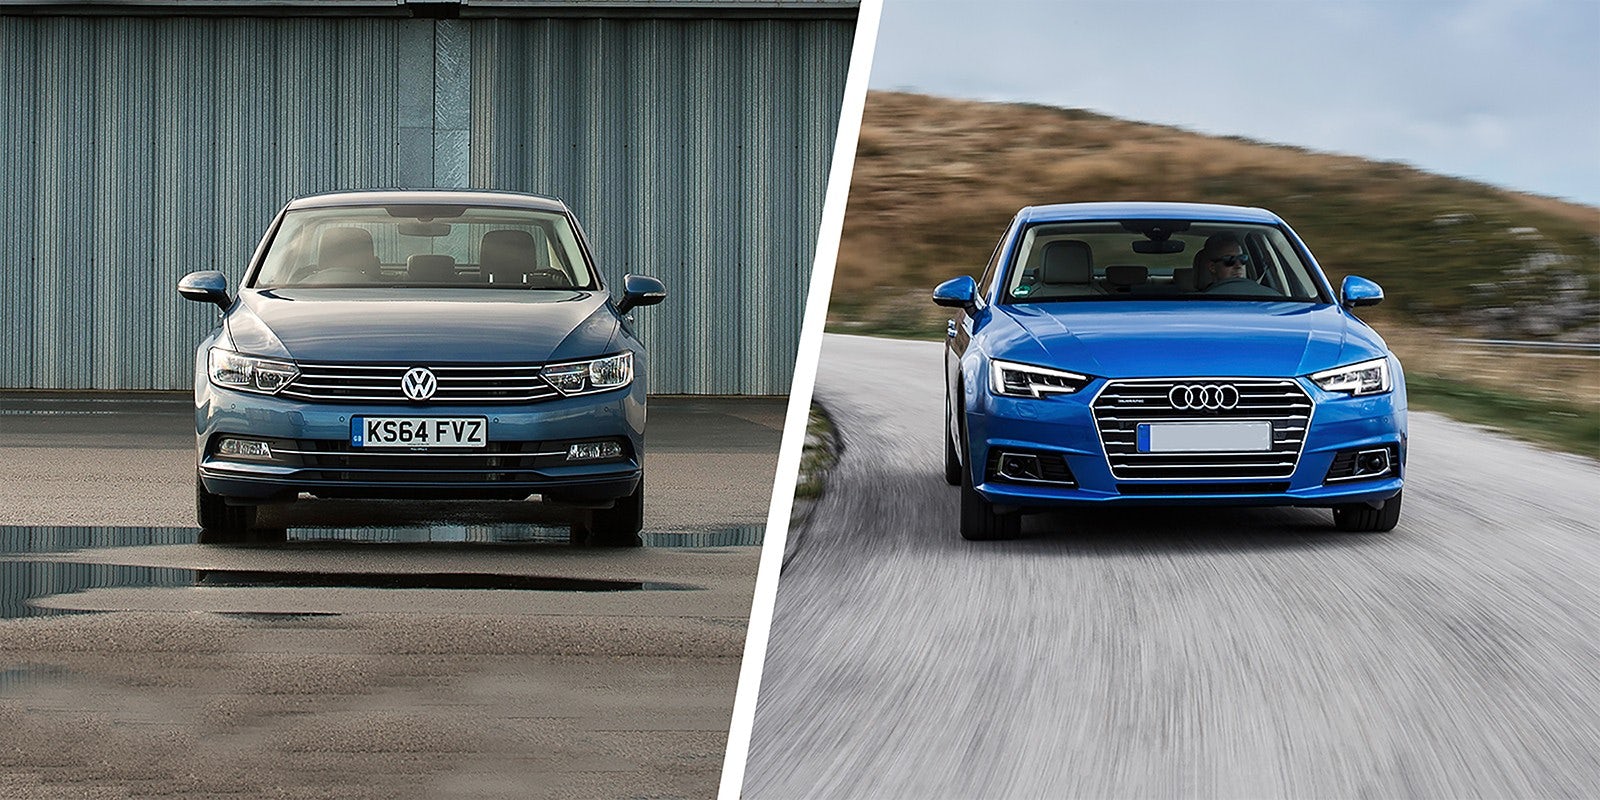 VW Passat vs Audi A4 – which is best?